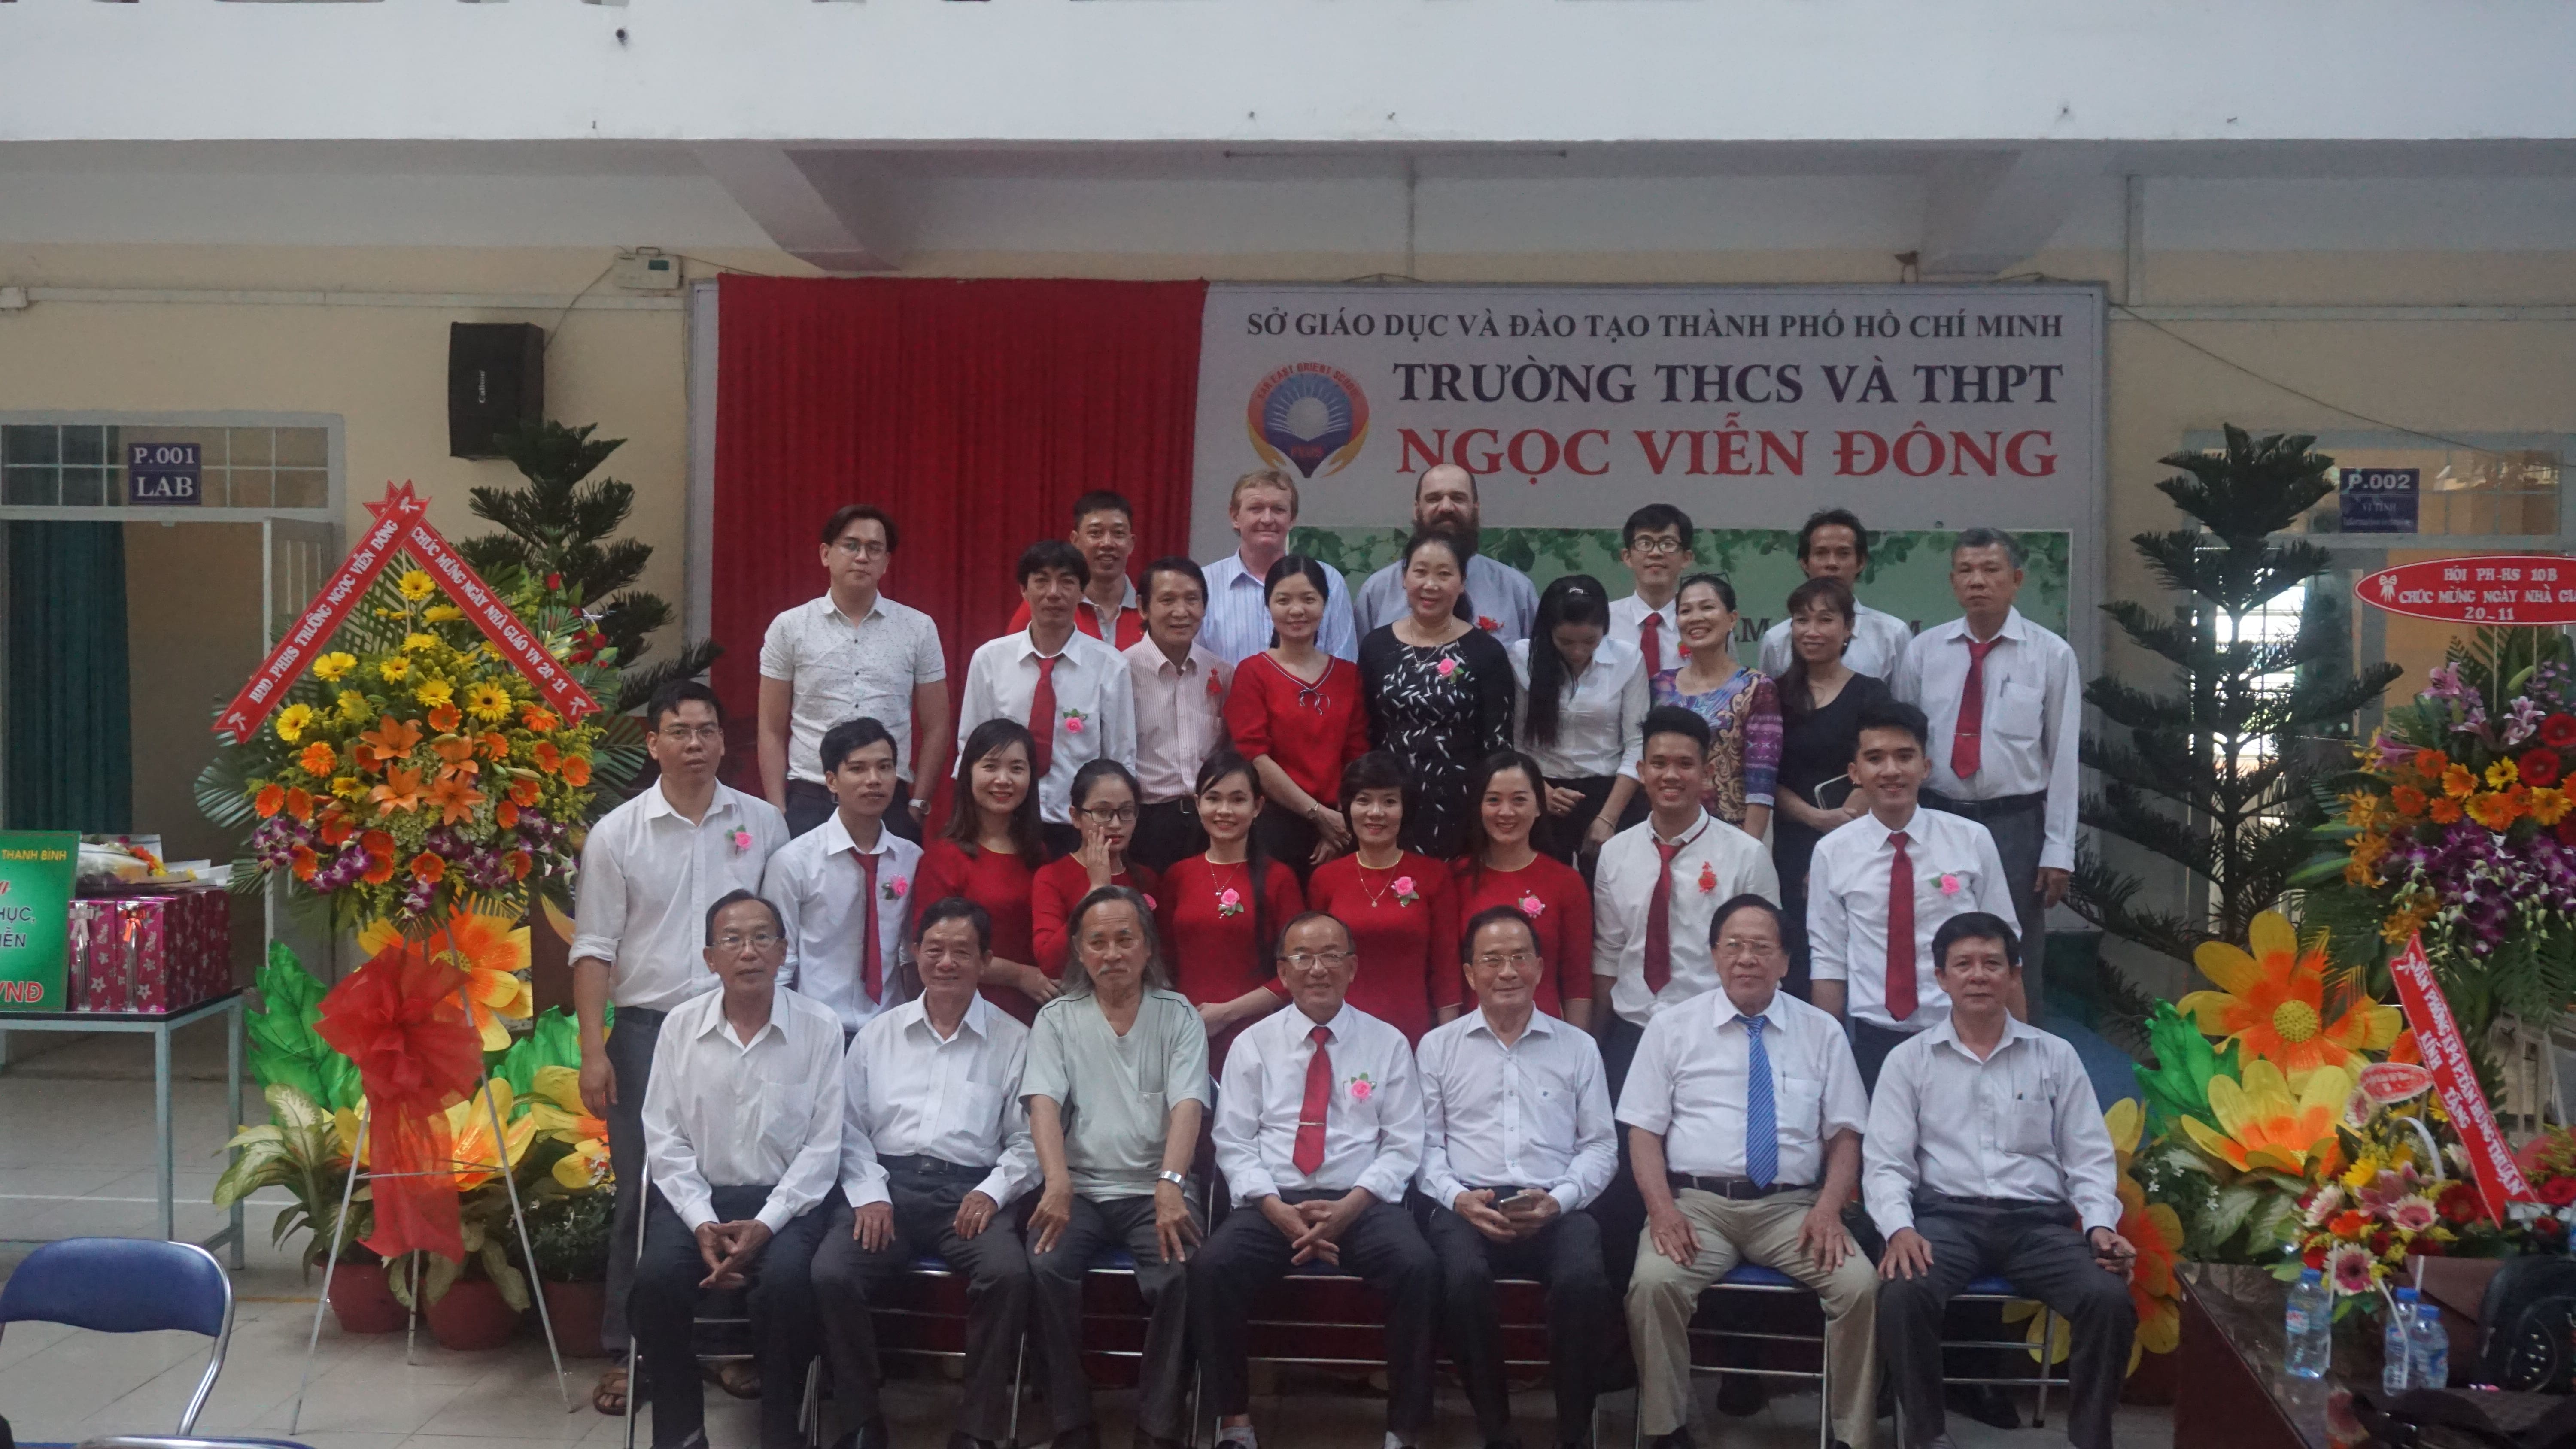 Hình ảnh lưu niệm sau buổi lễ meeting nhân ngày 20/11 của tập thể hội đồng trường THCS và THPT Ngọc Viễn Đông